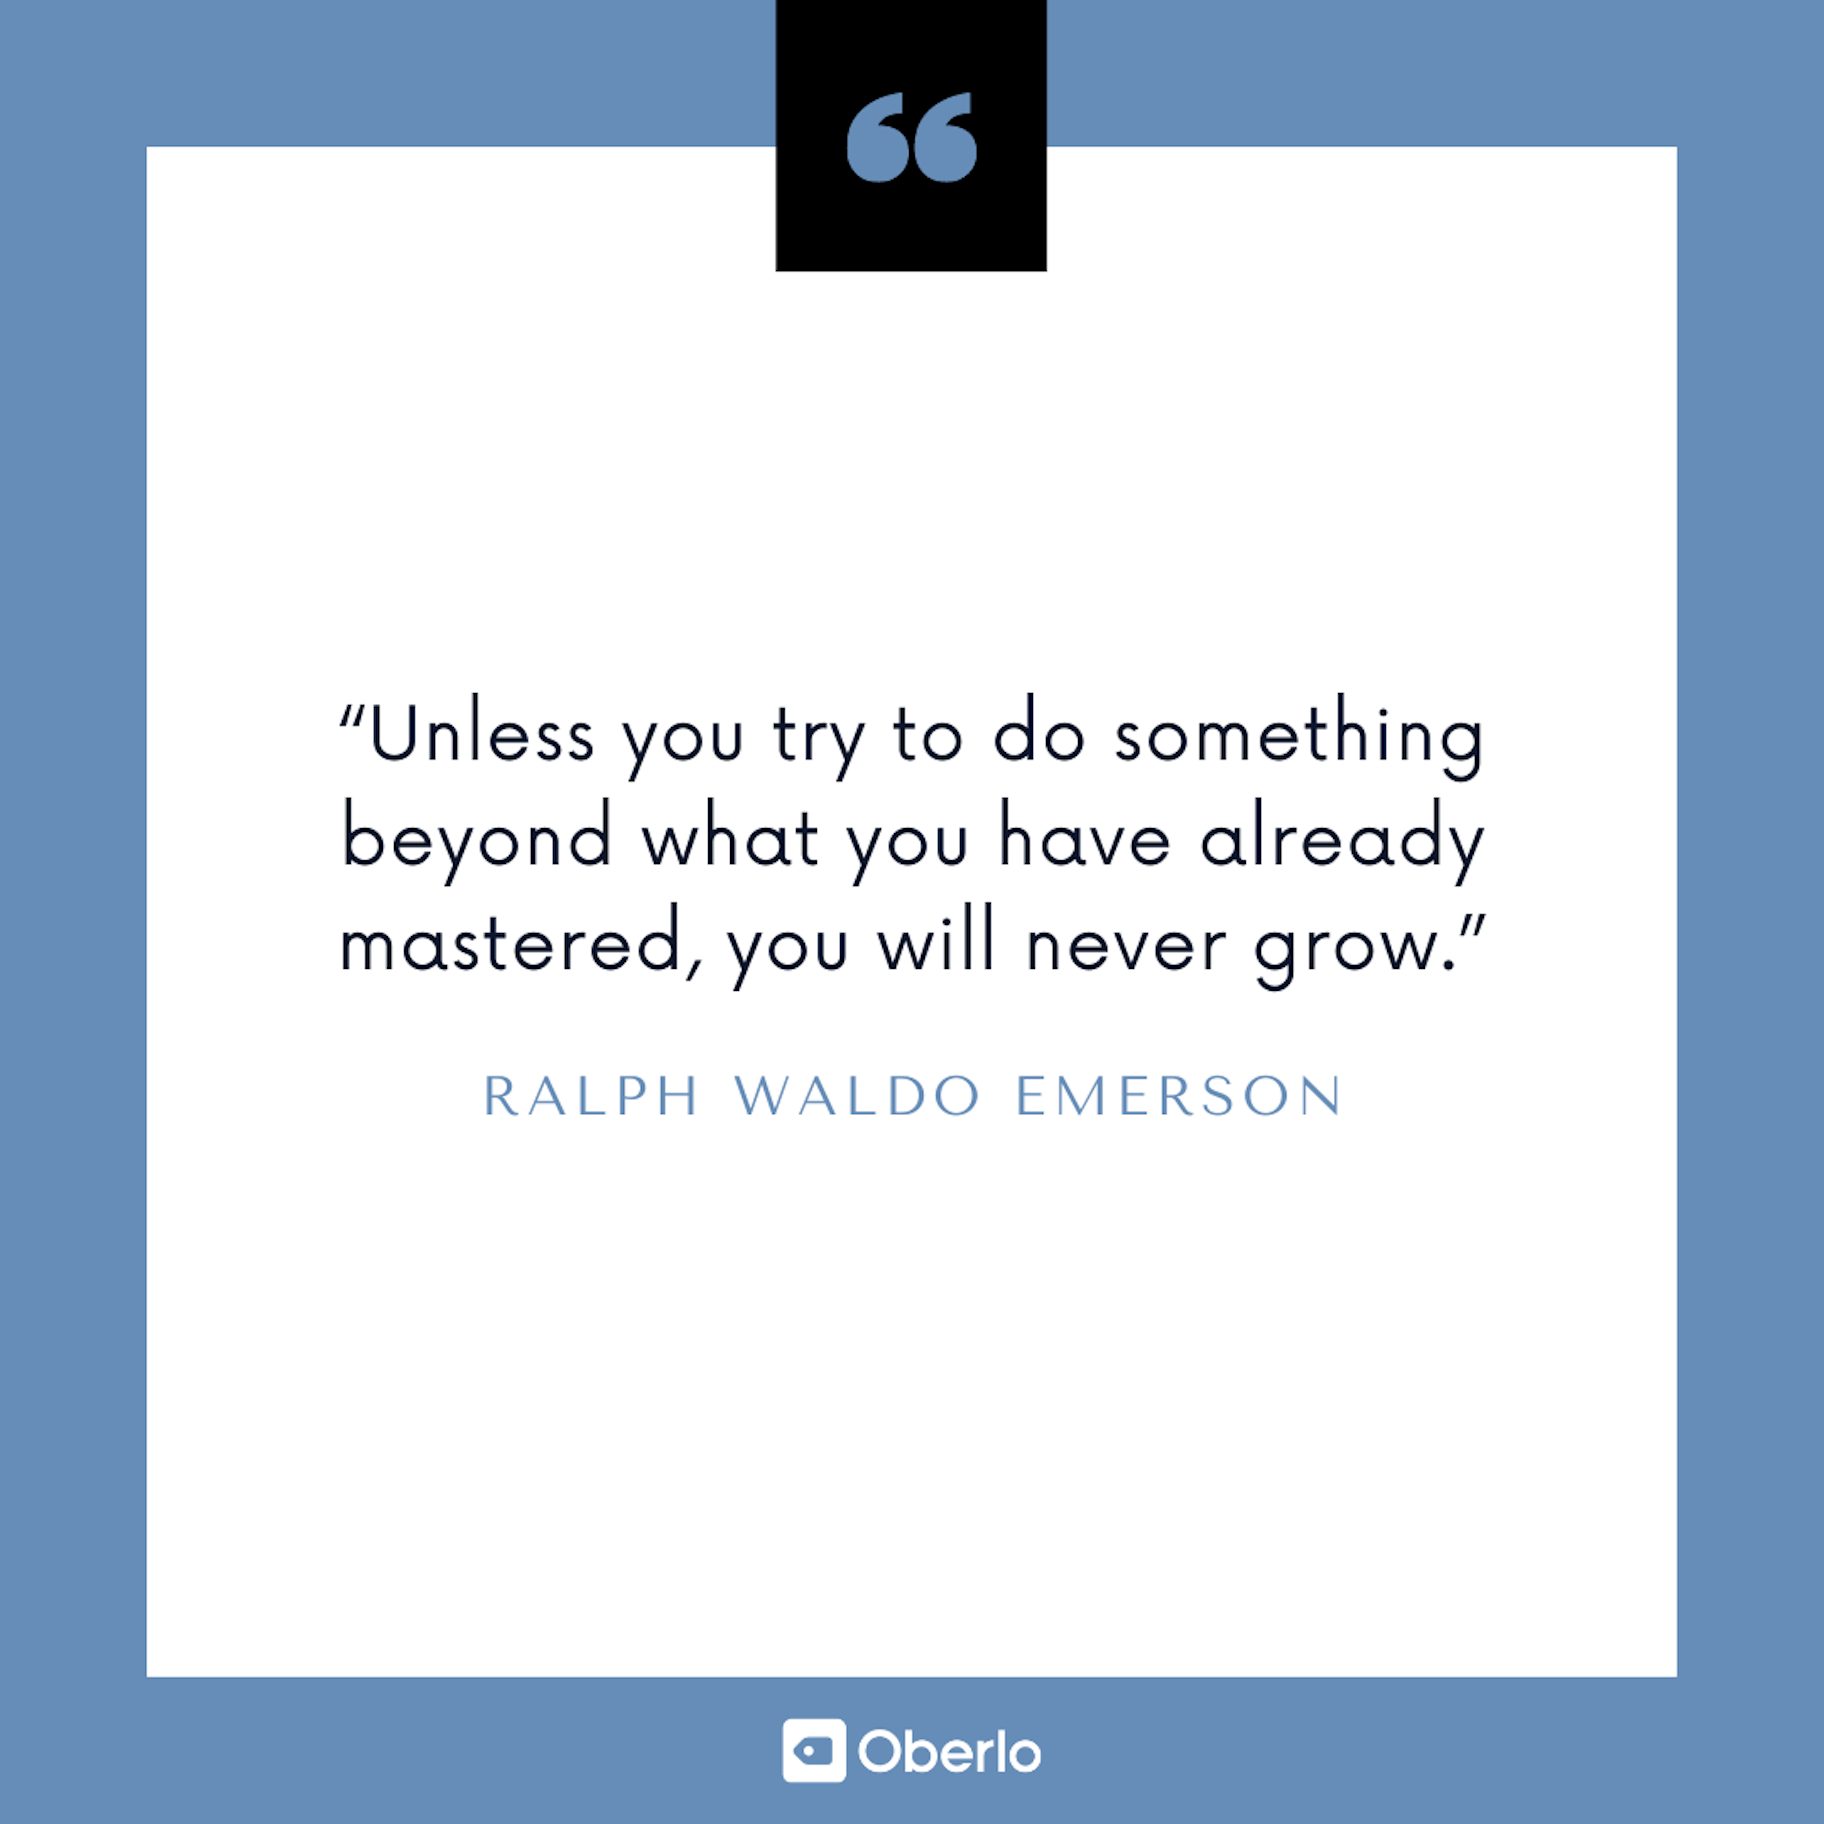 Cita sobre la mejora de uno mismo: Ralph Waldo Emerson